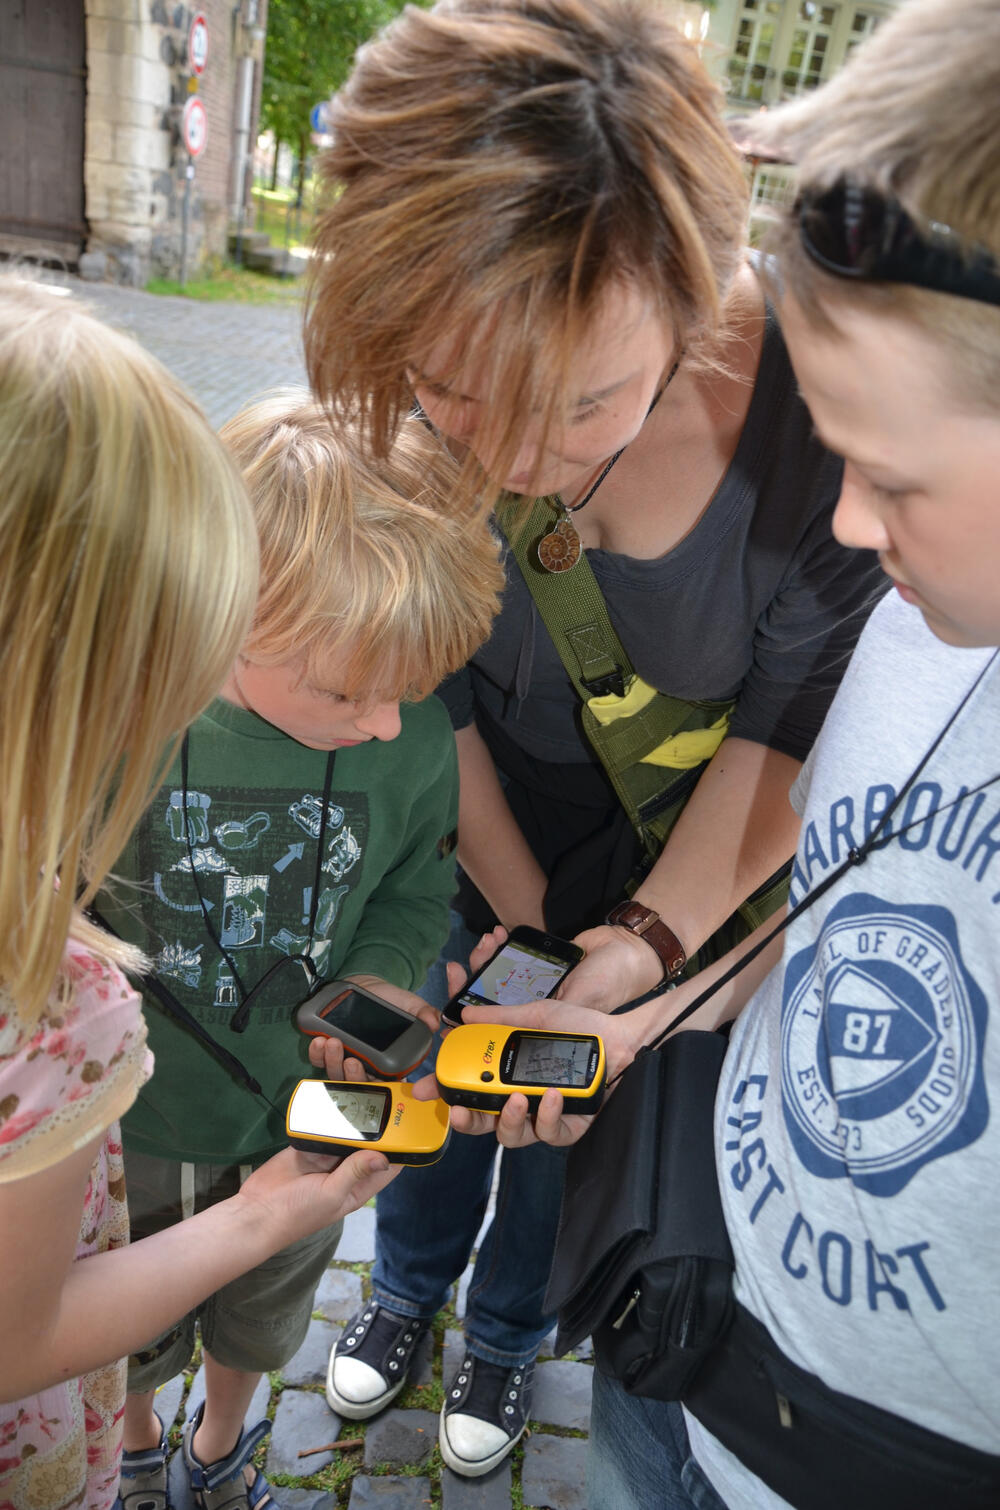 Laut einer Studie der Pädagogischen Hochschule Ludwigsburg sind GPS-Geräte unter mobilen elektronischen Geräten besonders häufig im Einsatz. © A. Lude